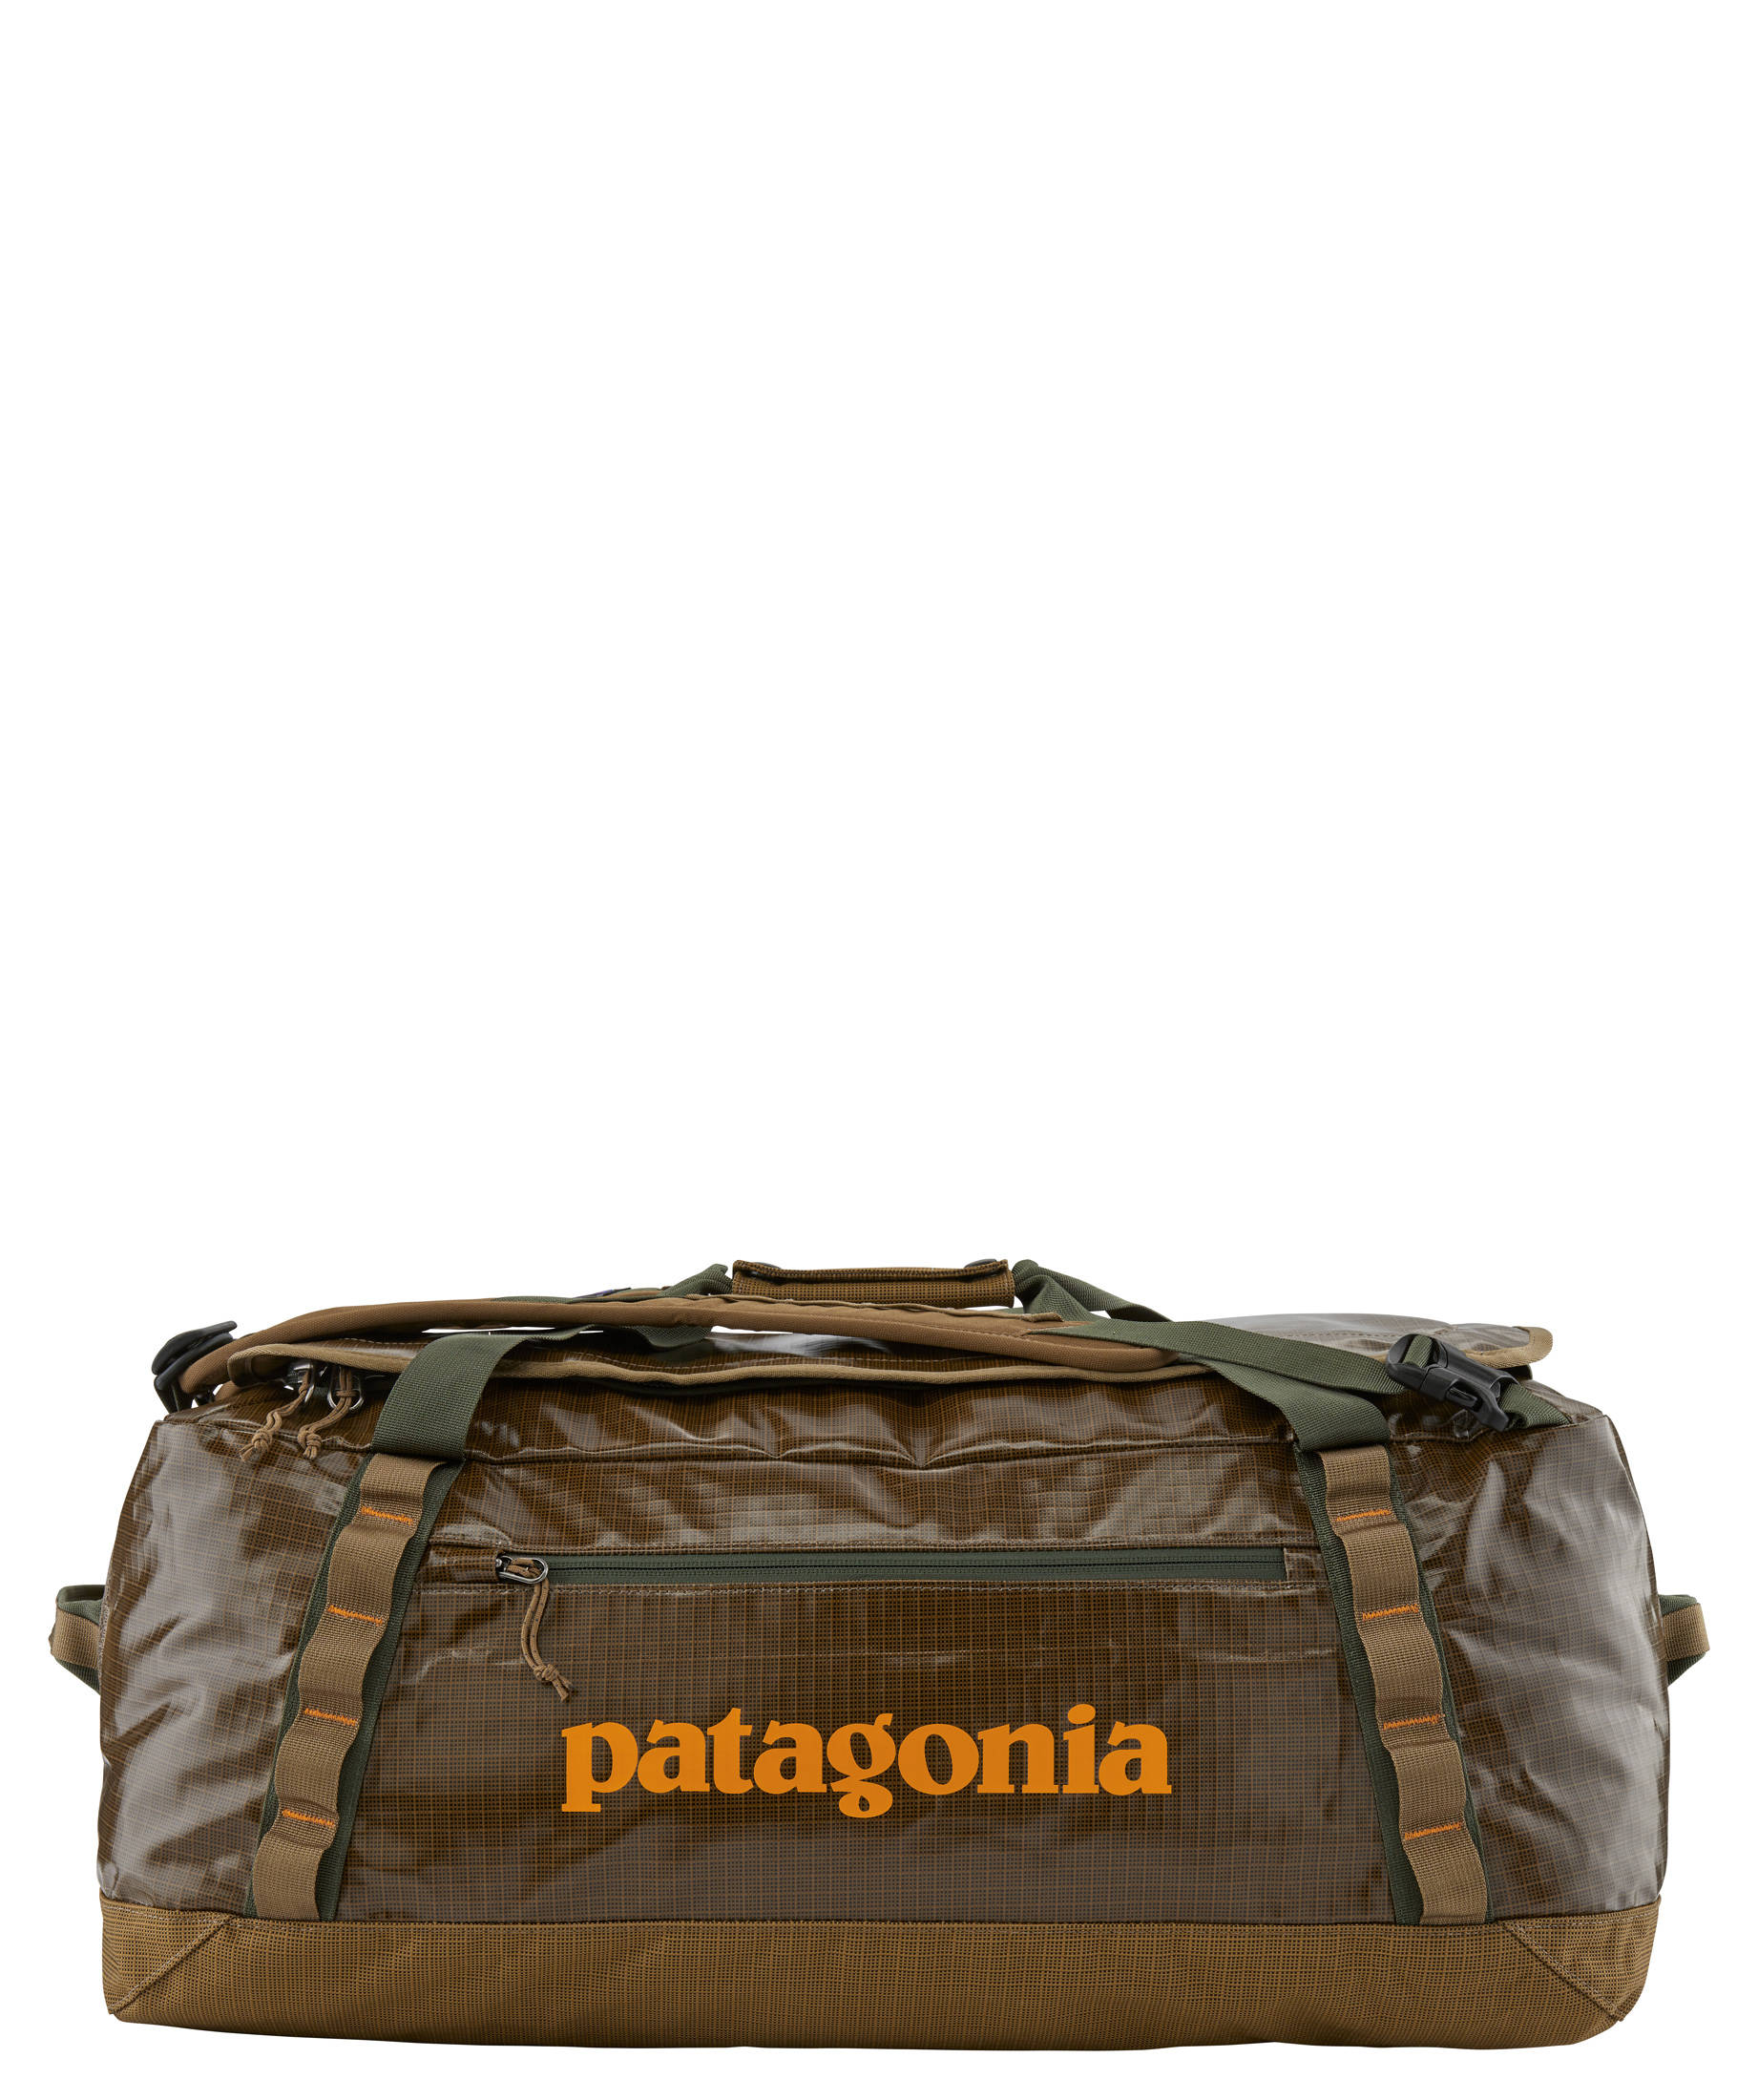 Patagonia 55l Reisetasche Mit Logodruck black Hole für Herren Herren Taschen Reisetaschen und Koffer 